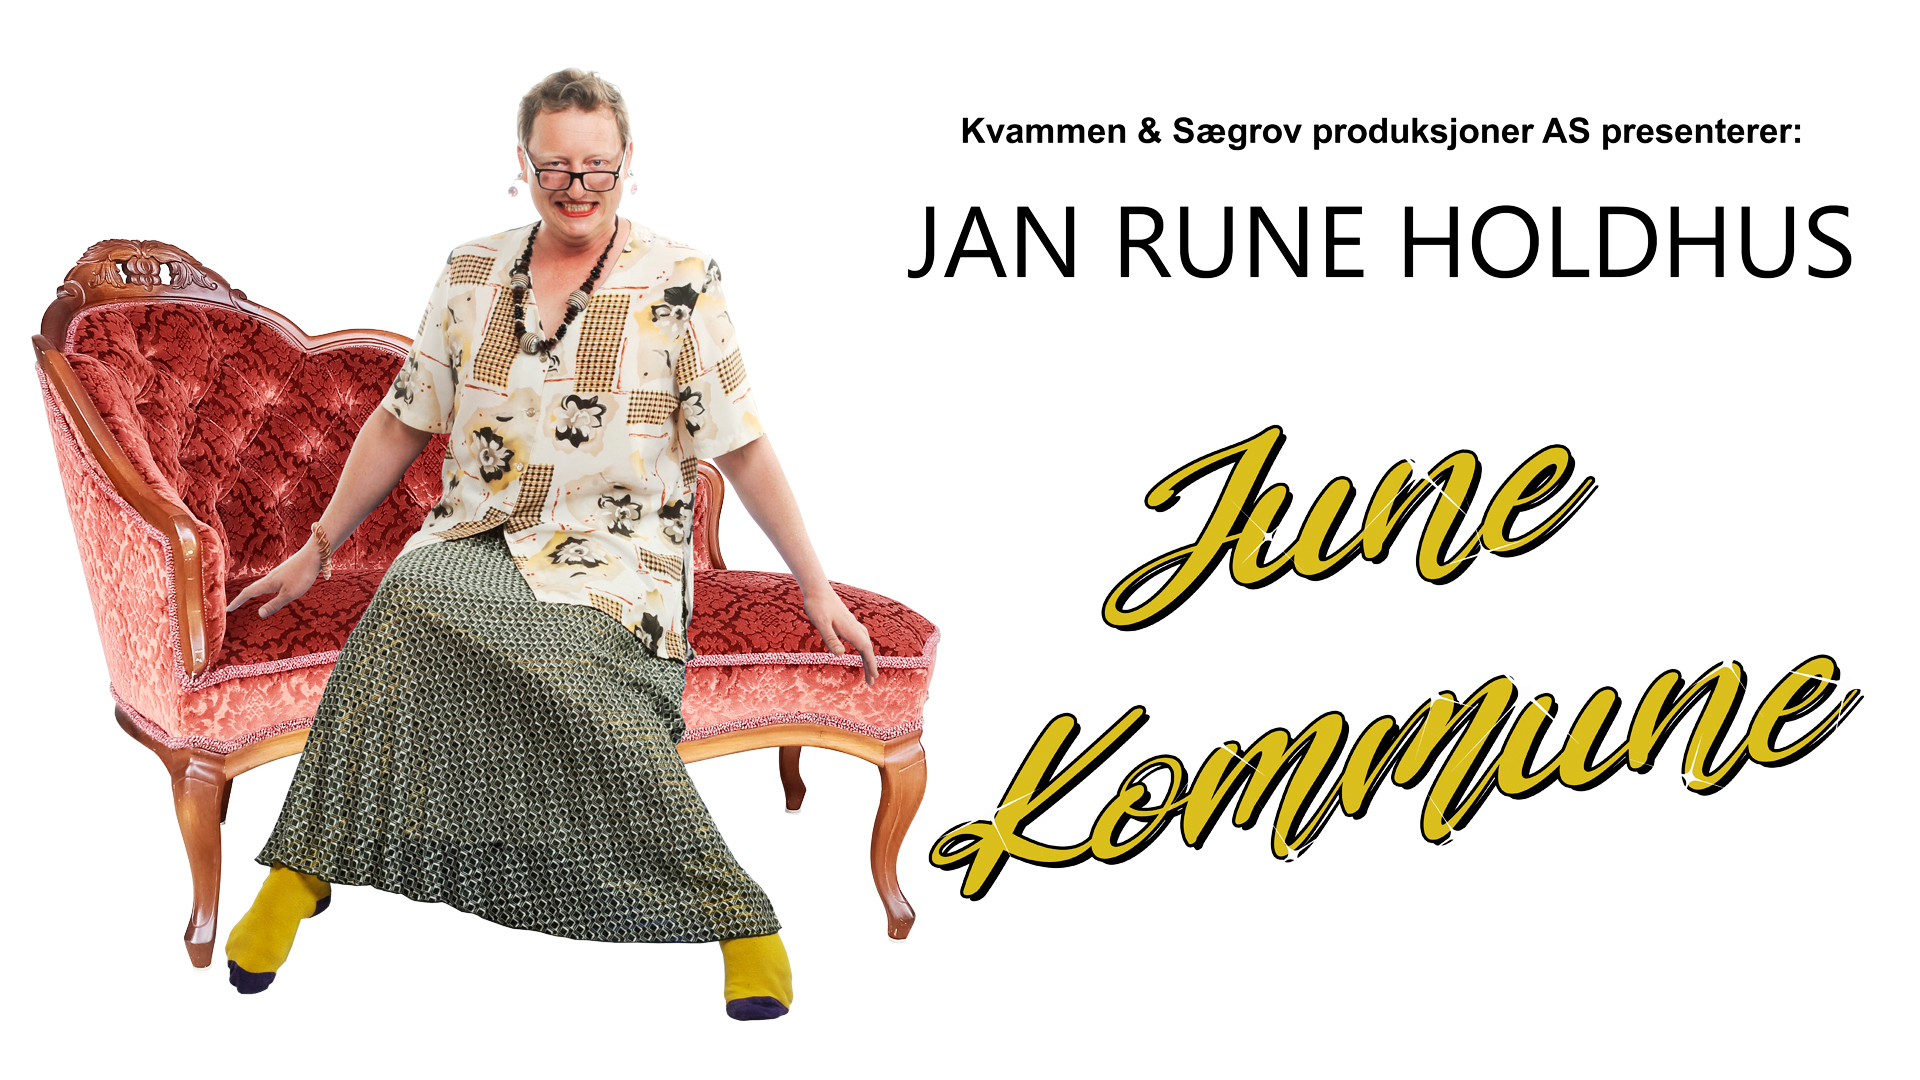 June Kommune